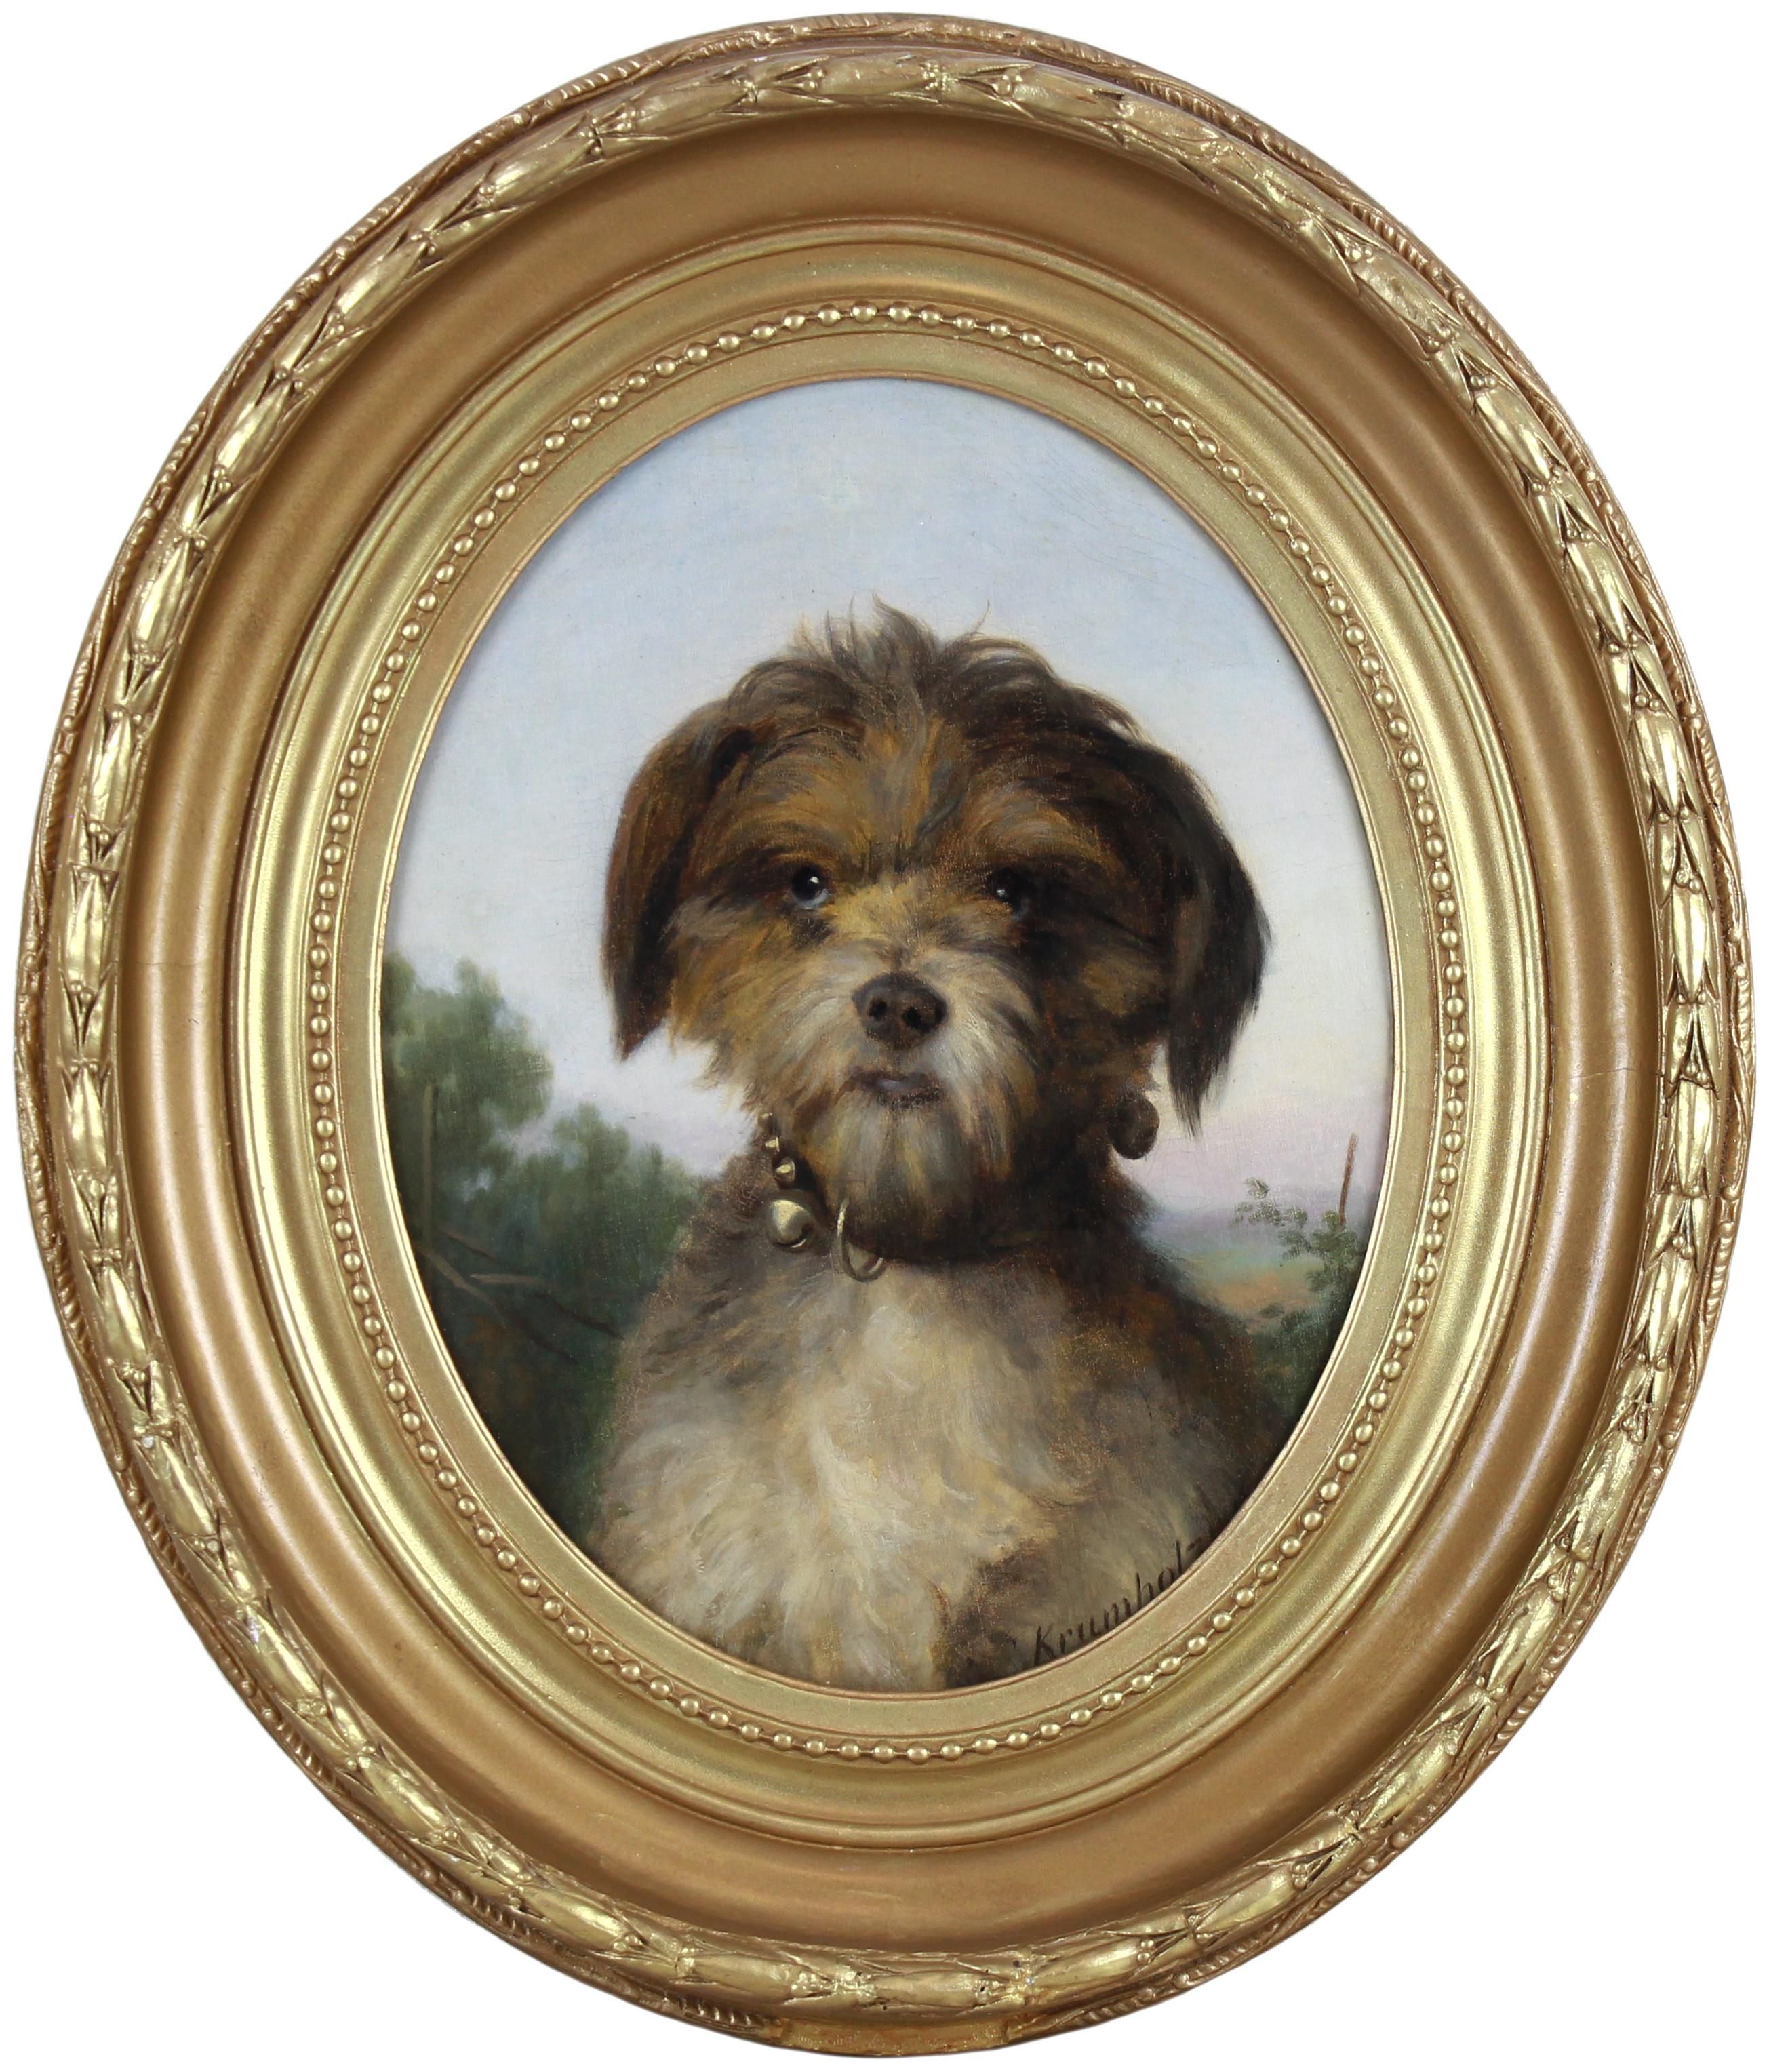 Ferdinand KRUMHOLZ (1810-1878) Animal Painting – Ölgemälde auf Leinwand, Porträt eines kleinen Hundes von Ferdinand Krumholz